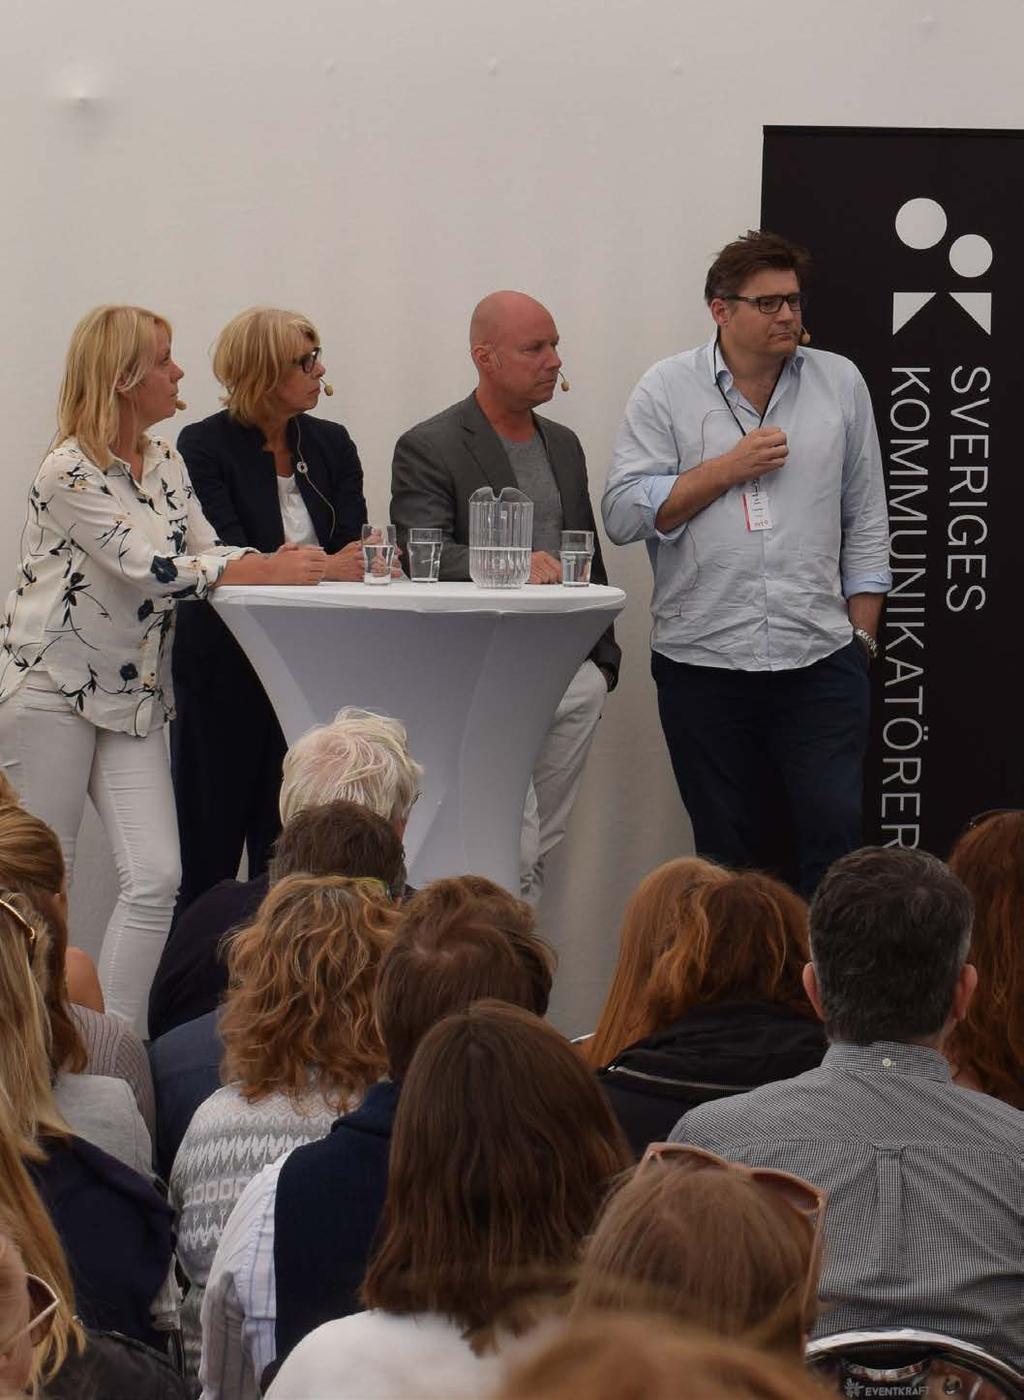 Almedalen Sveriges Kommunikatörer medverkade för femte gången i rad under Almedalsveckan i Visby. Den här gången med två egna seminarier som lockade 350 besökare.